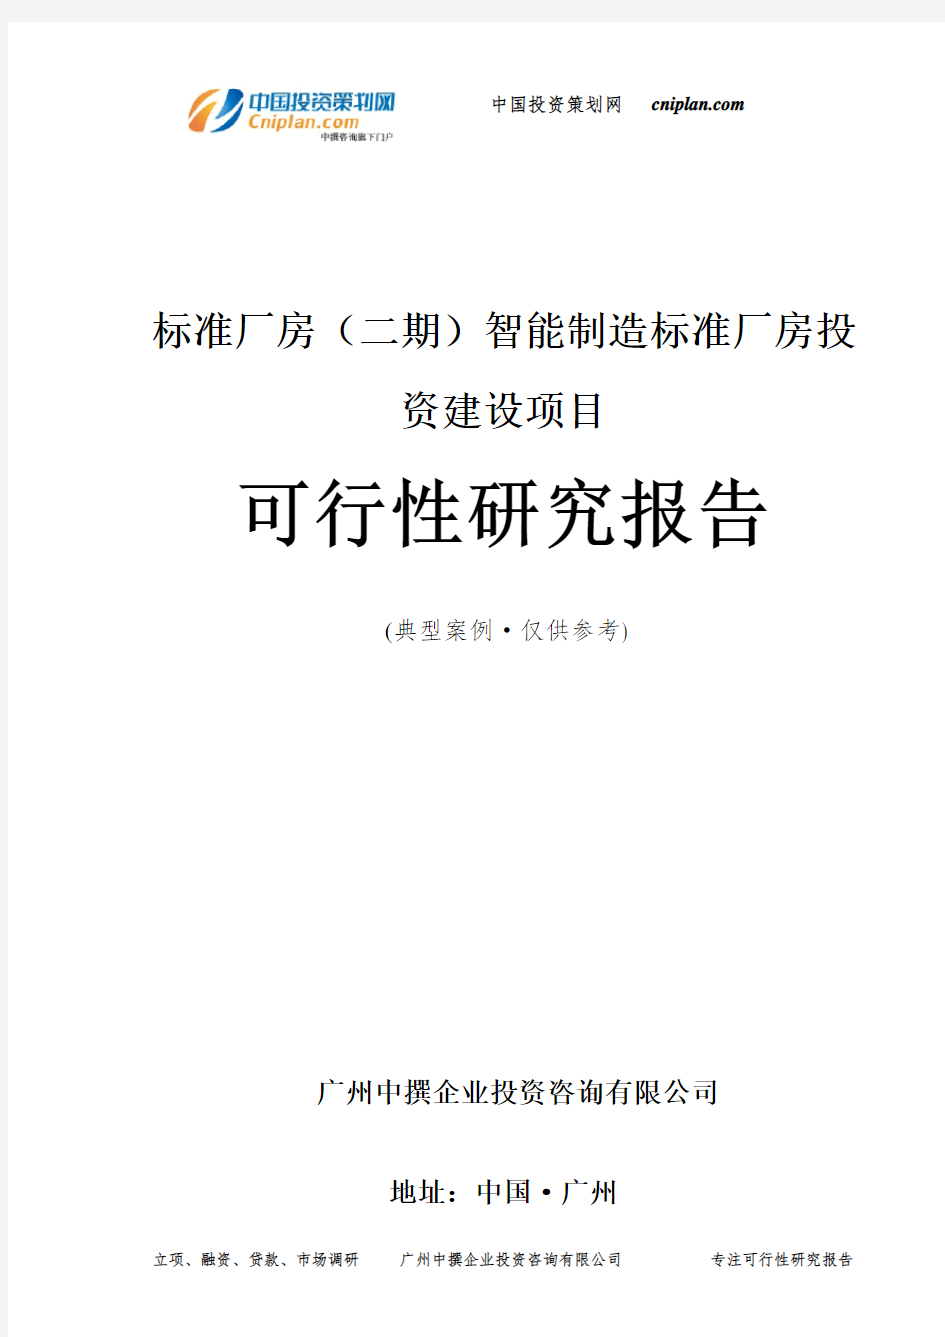 标准厂房(二期)智能制造标准厂房投资建设项目可行性研究报告-广州中撰咨询